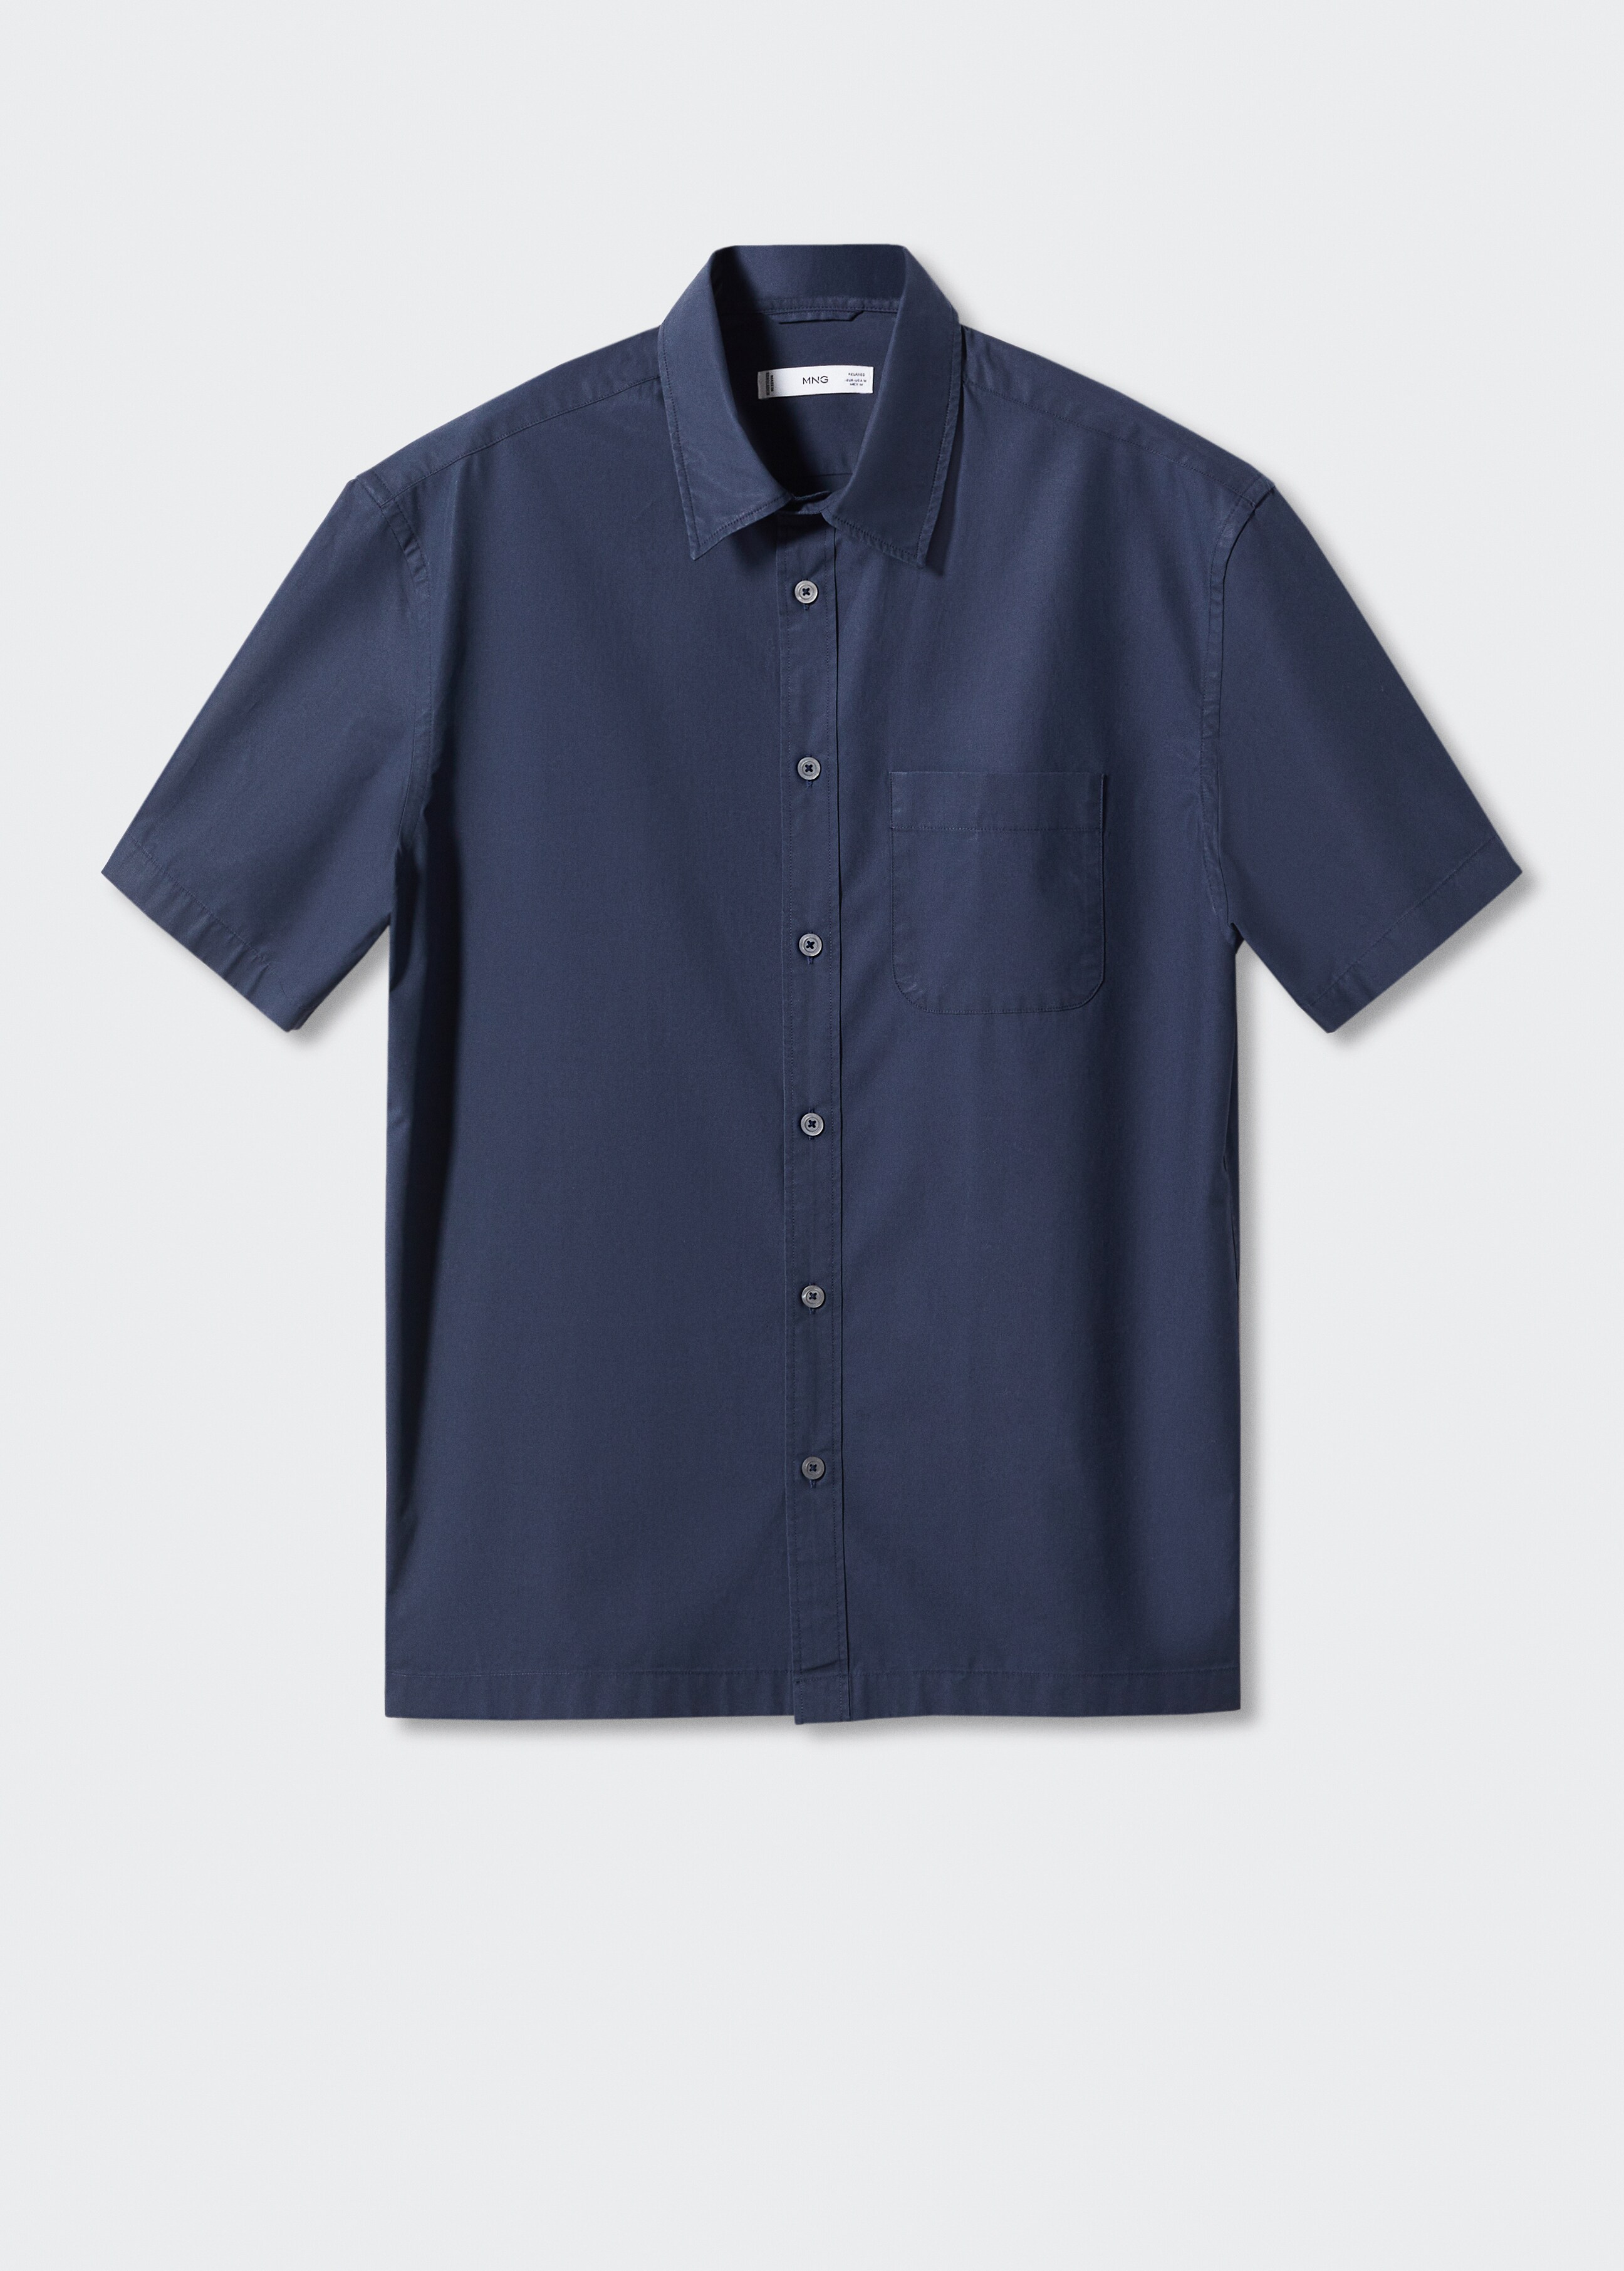 Camisa regular fit algodón manga corta - Artículo sin modelo